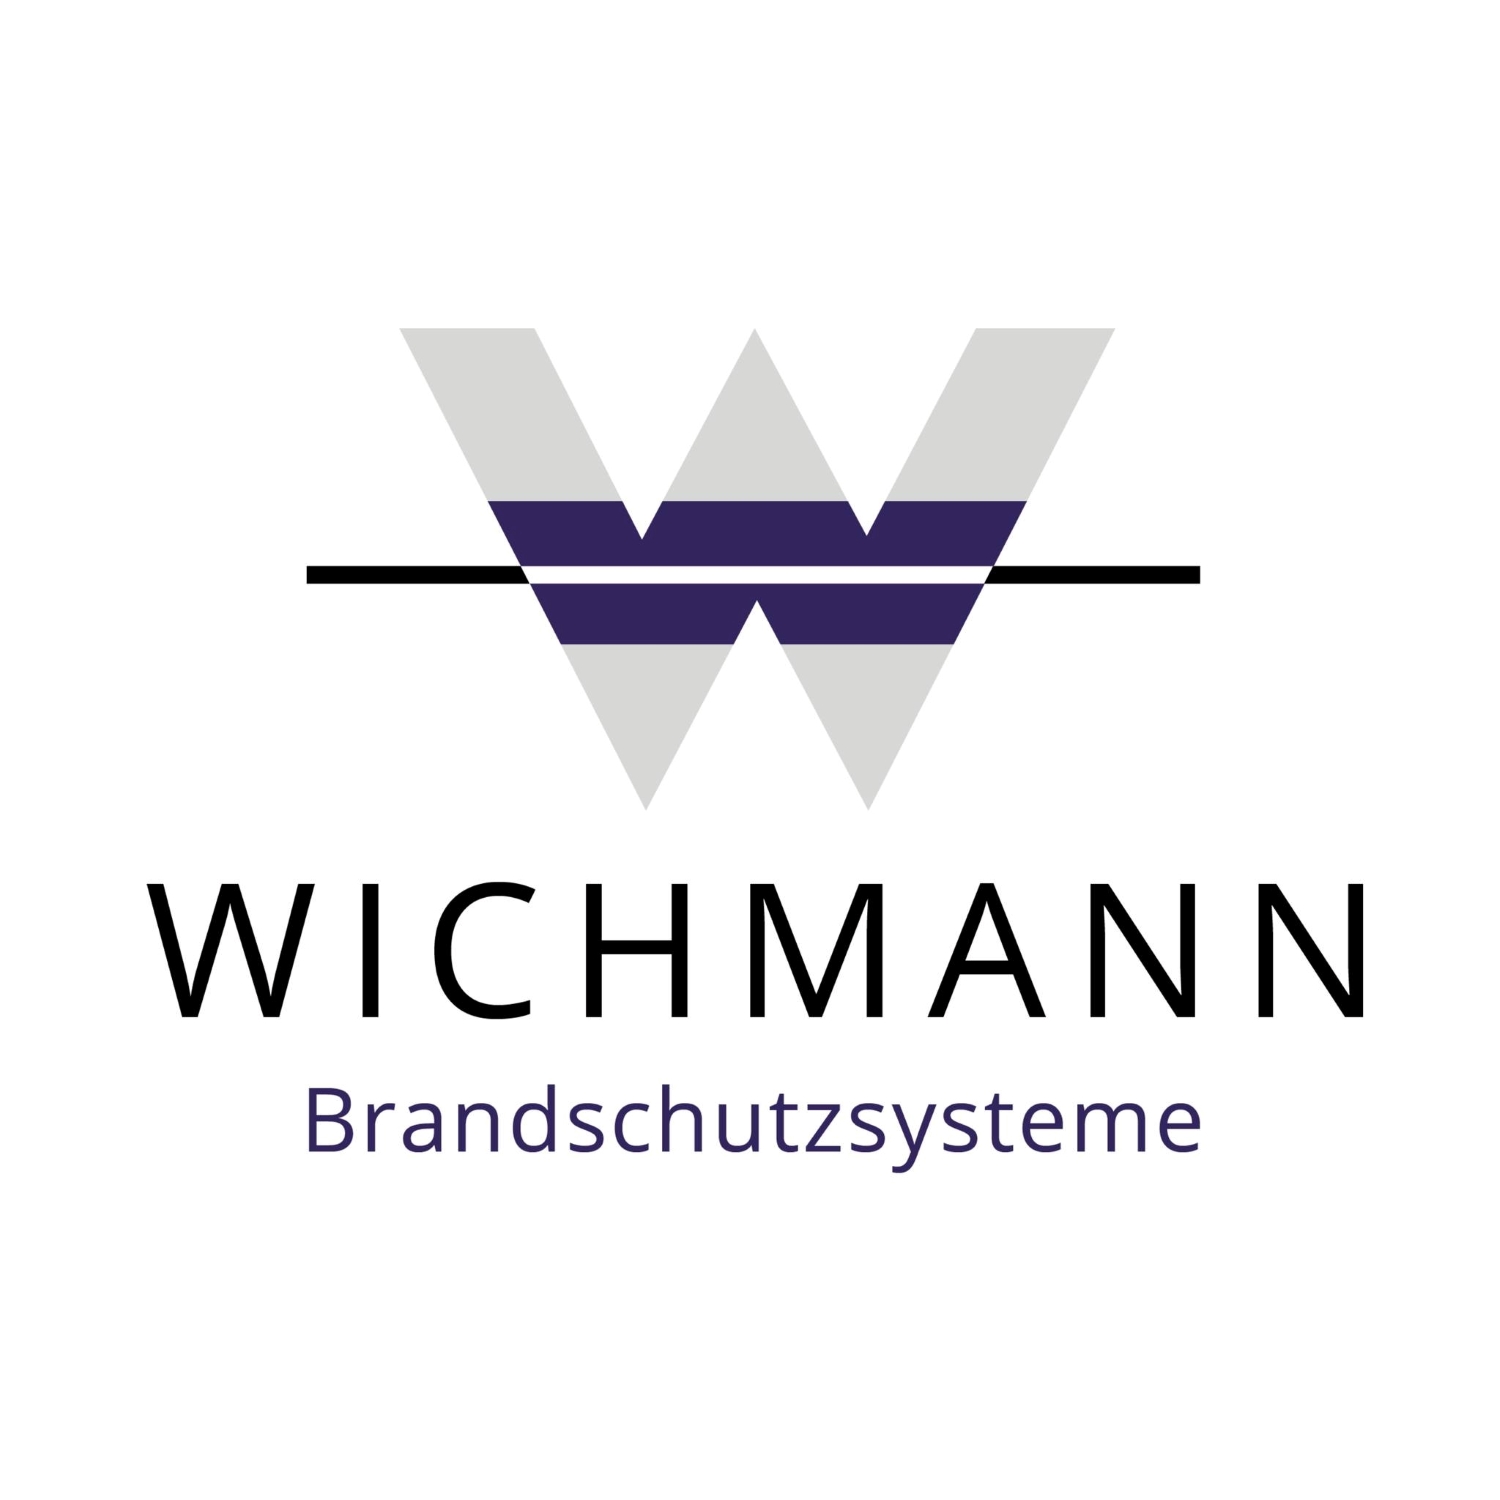 Wichmann Brandschutzsysteme